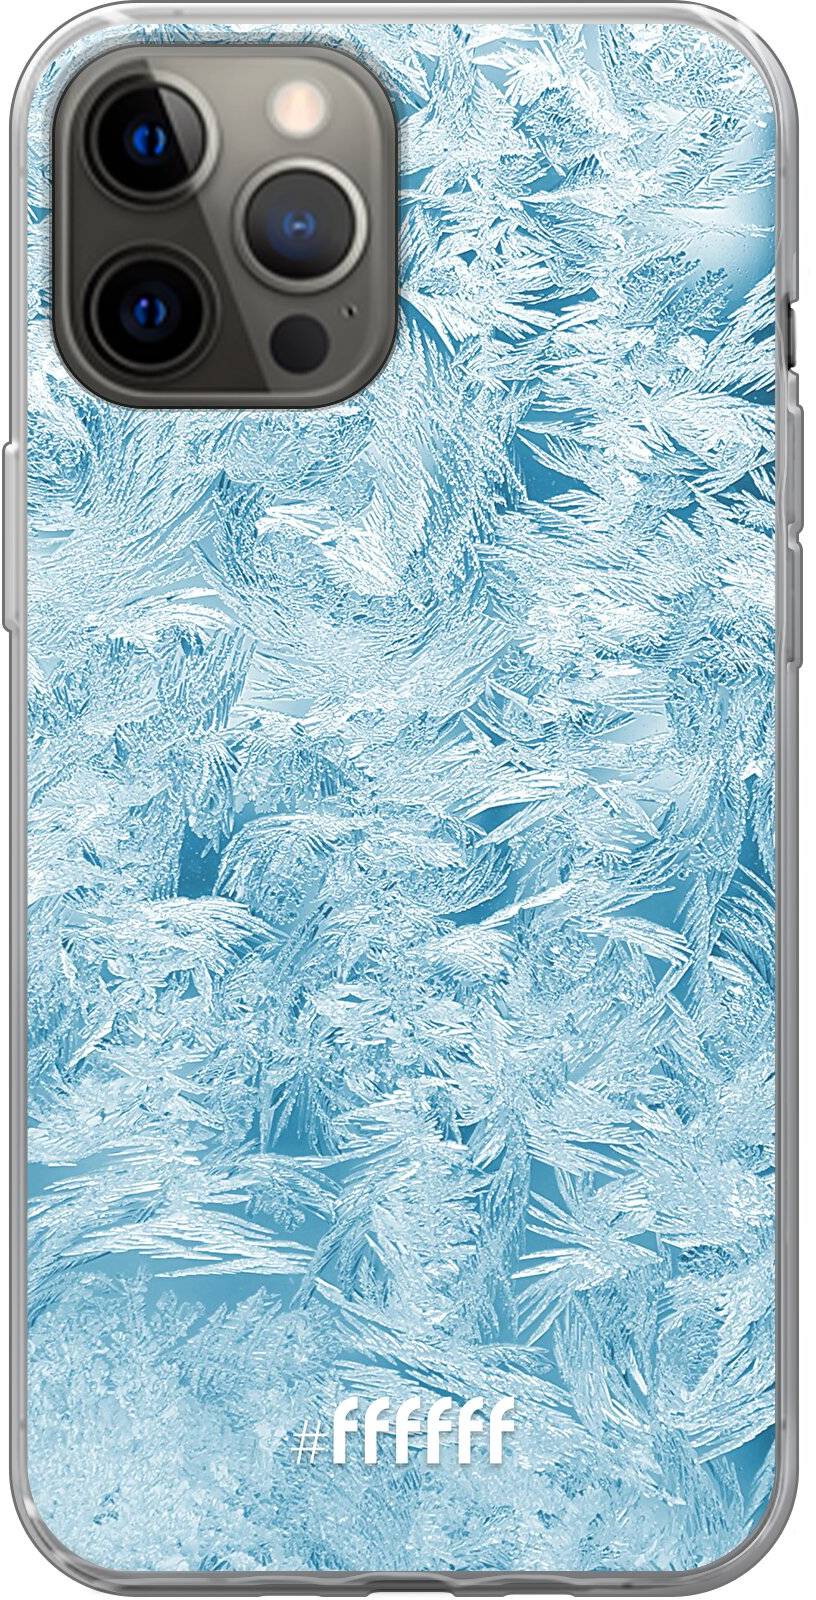 Siberia iPhone 12 Pro Max